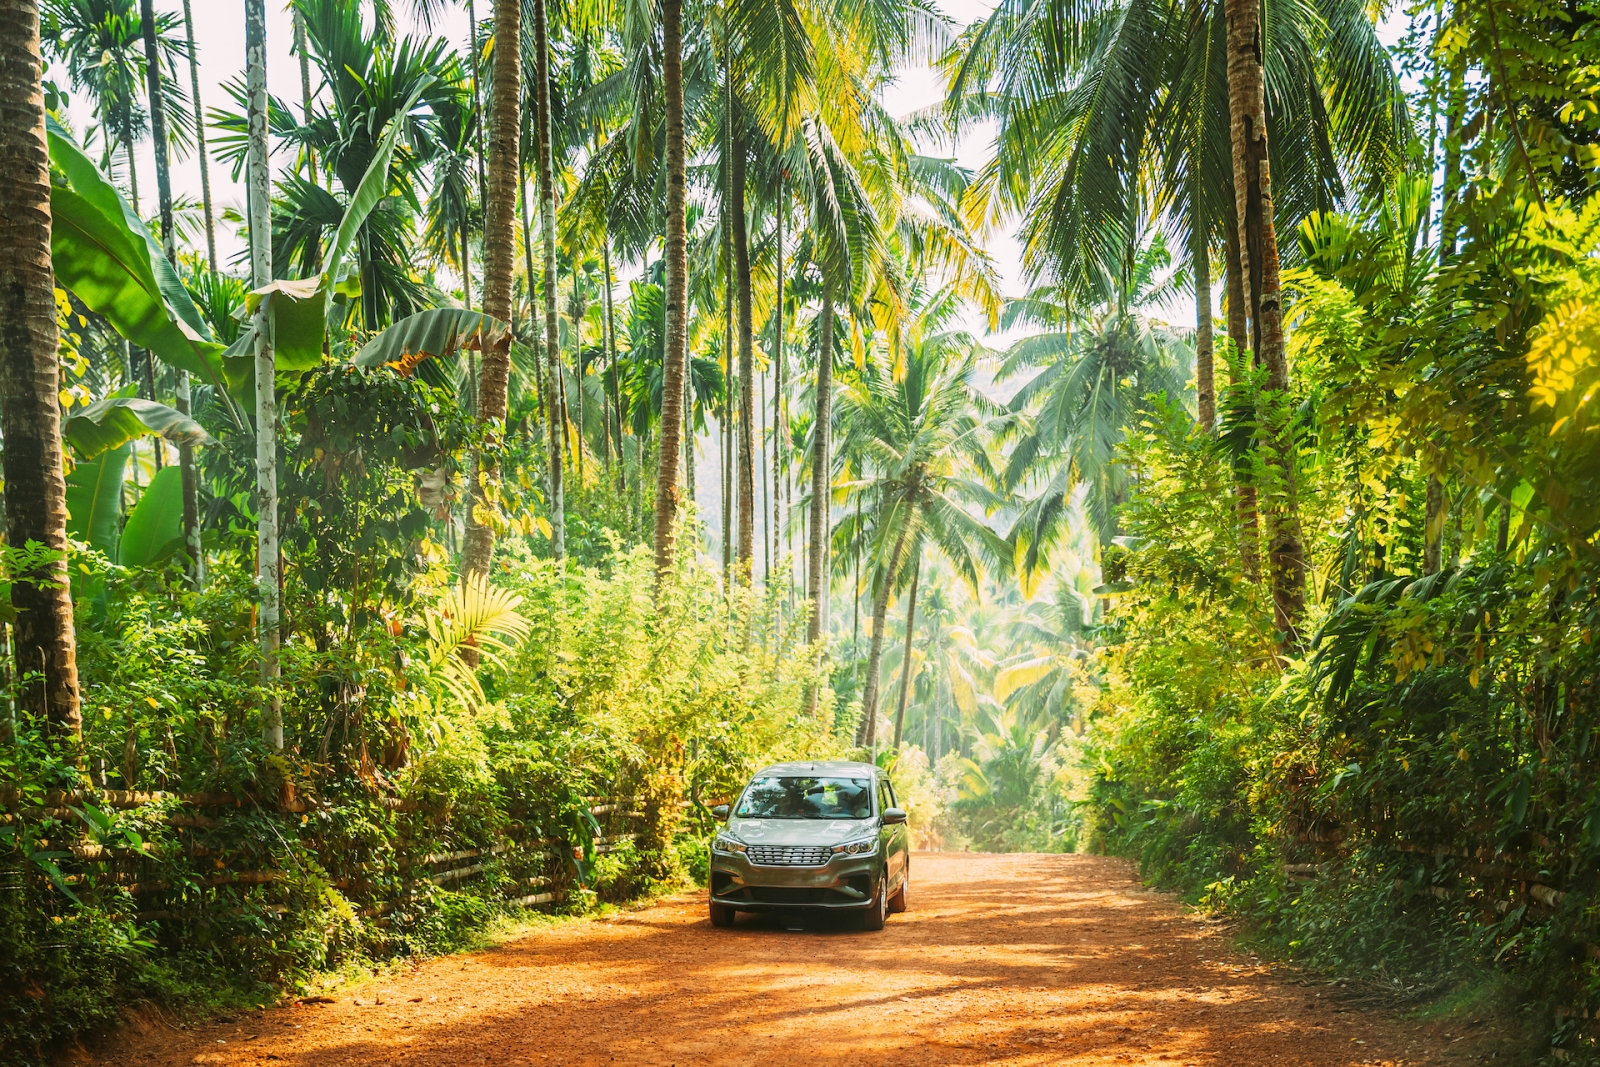 Гоа, Индия.  Автомобиль движется по дороге в окружении пальм в солнечный день